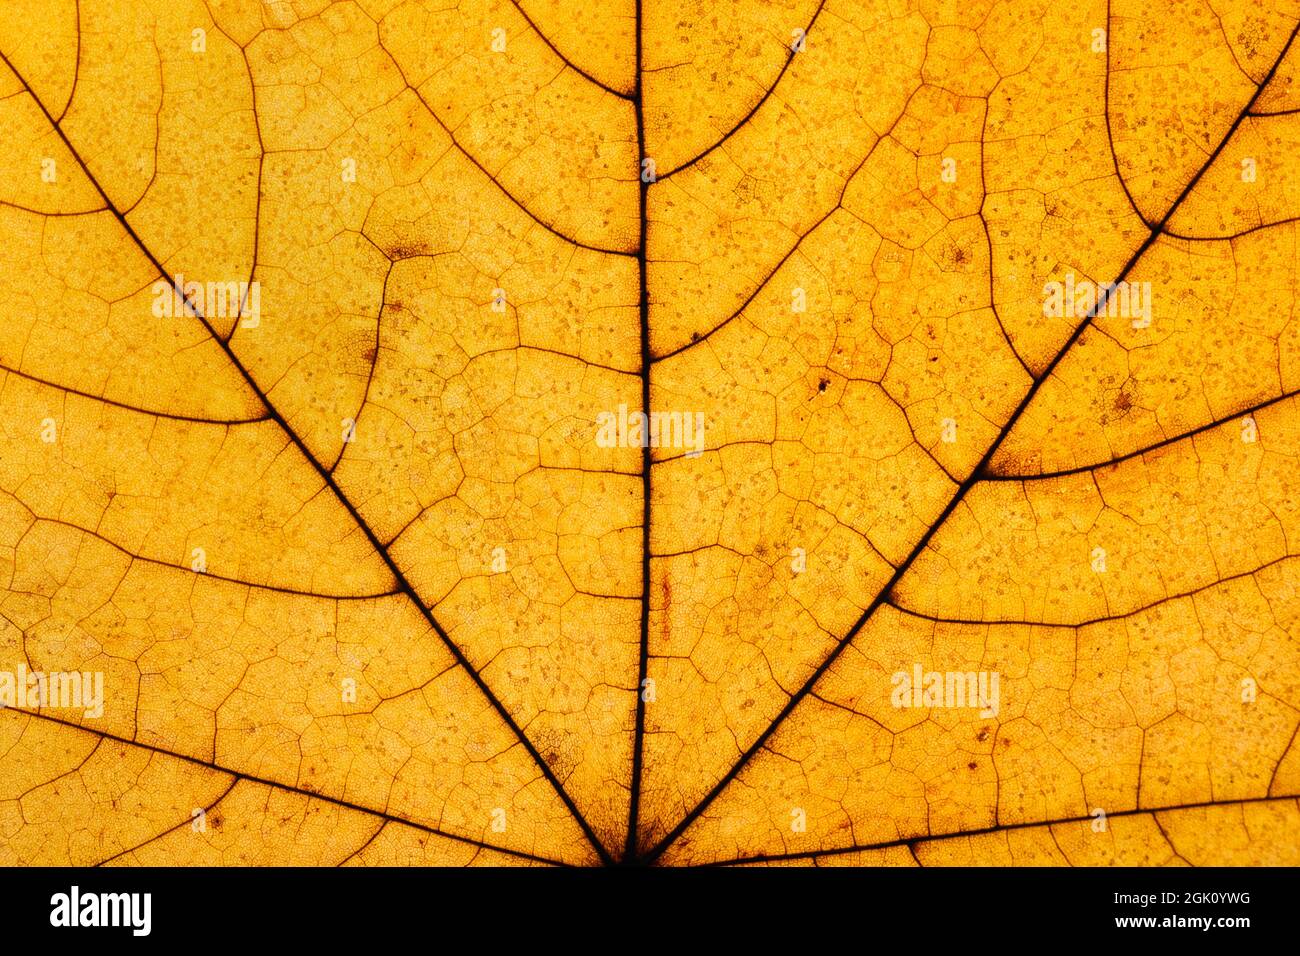 Macro foto di Autunno Foliage. Giallo e dorato Maple foglia texture close up. Foto Stock